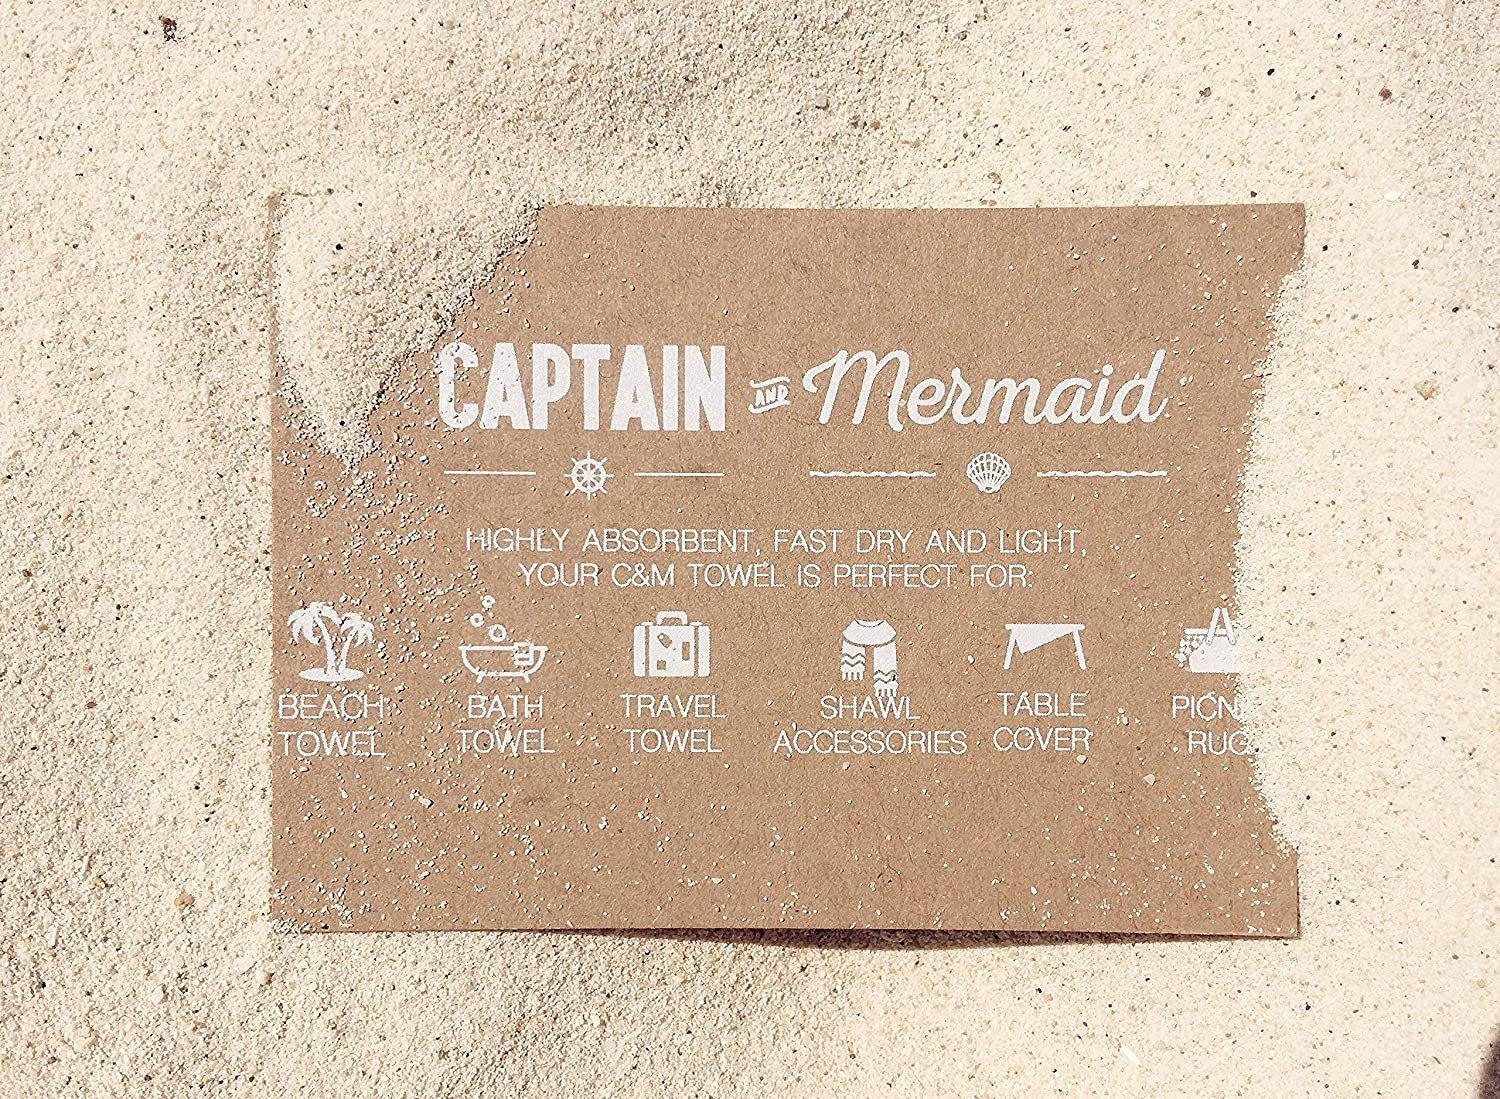 Mermaid 100% and Blue Baumwolle, 100% Baumwolle aus Strandtuch Captain&Mermaid Premium CAPTAIN Strandtuch